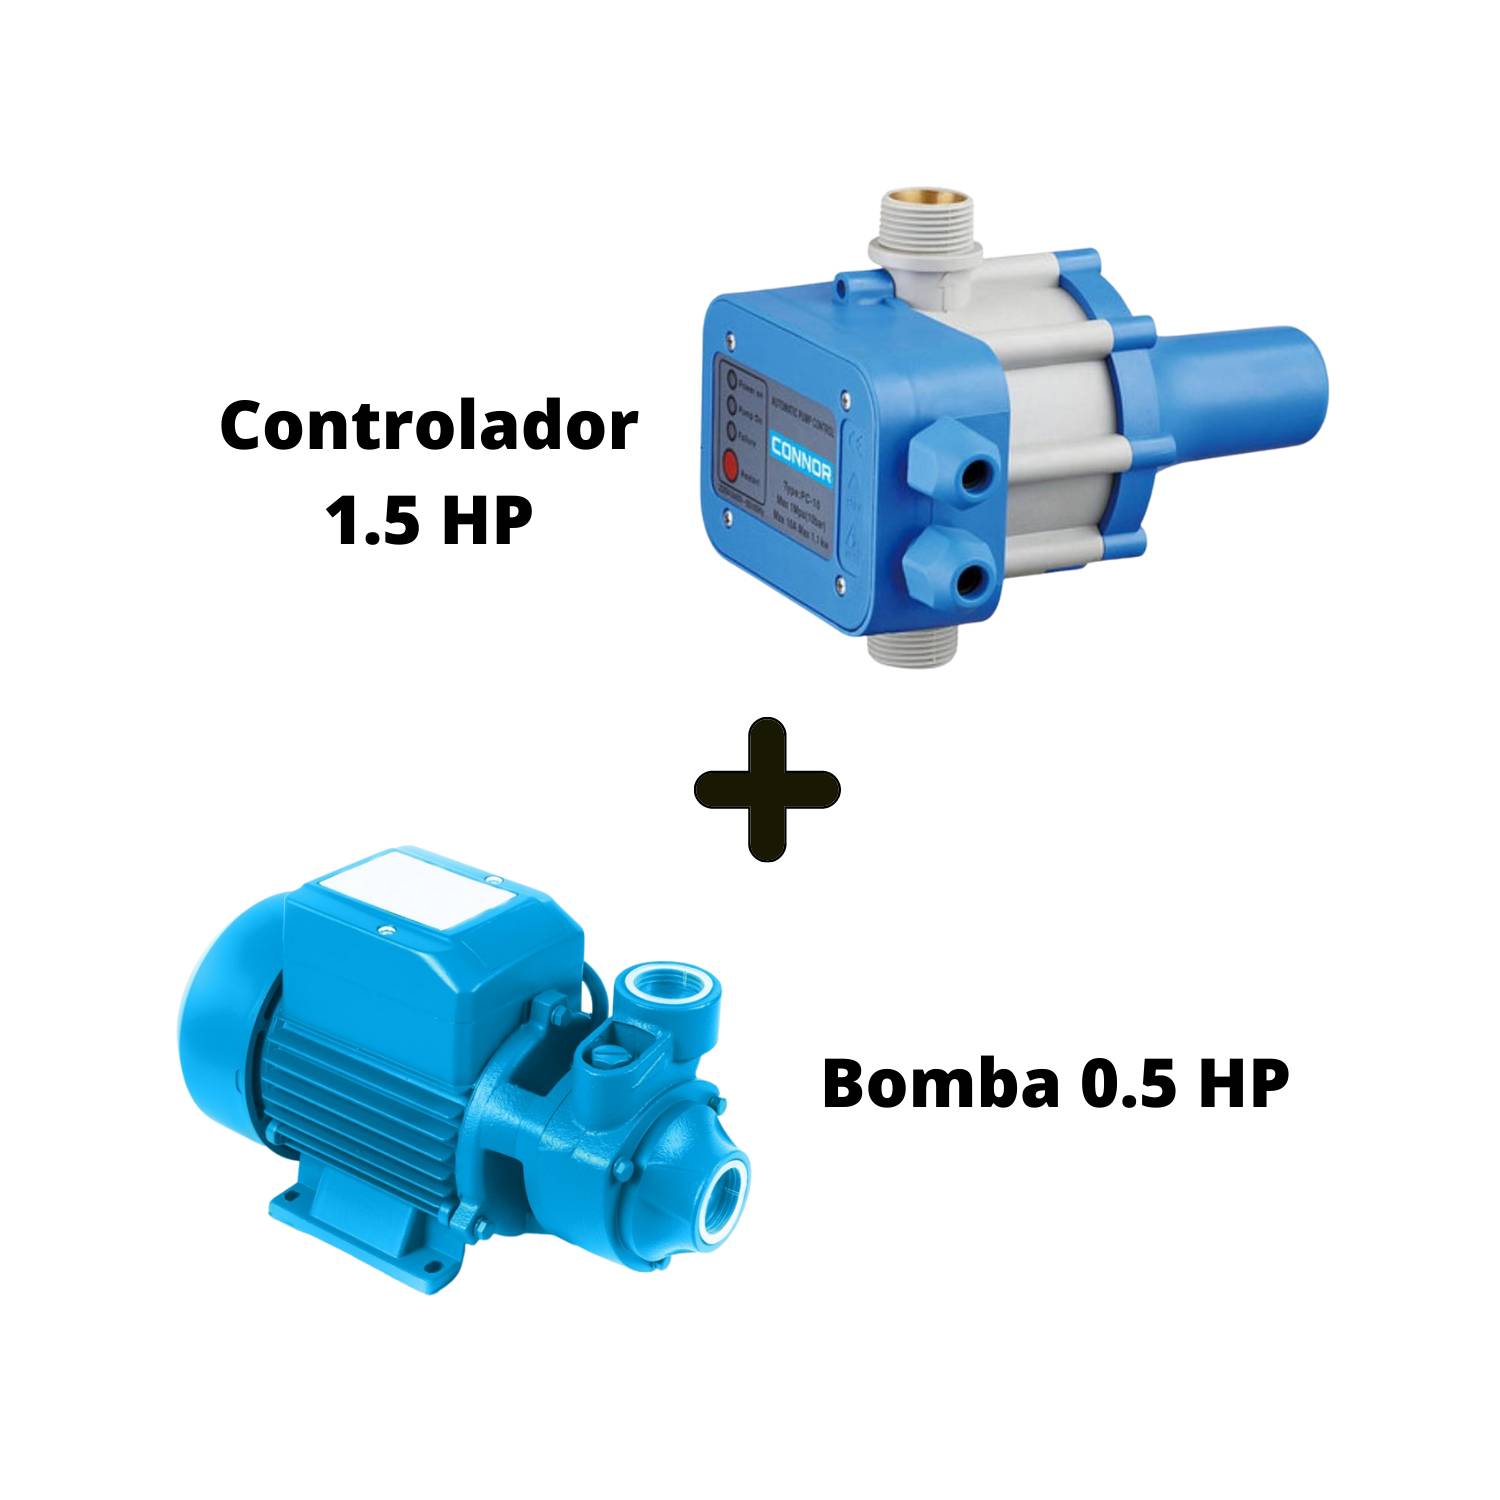 KOSLAN Bomba Agua Periferica 0.5 Hp + Controlador 1.5 Hp - Connor (Koslan)